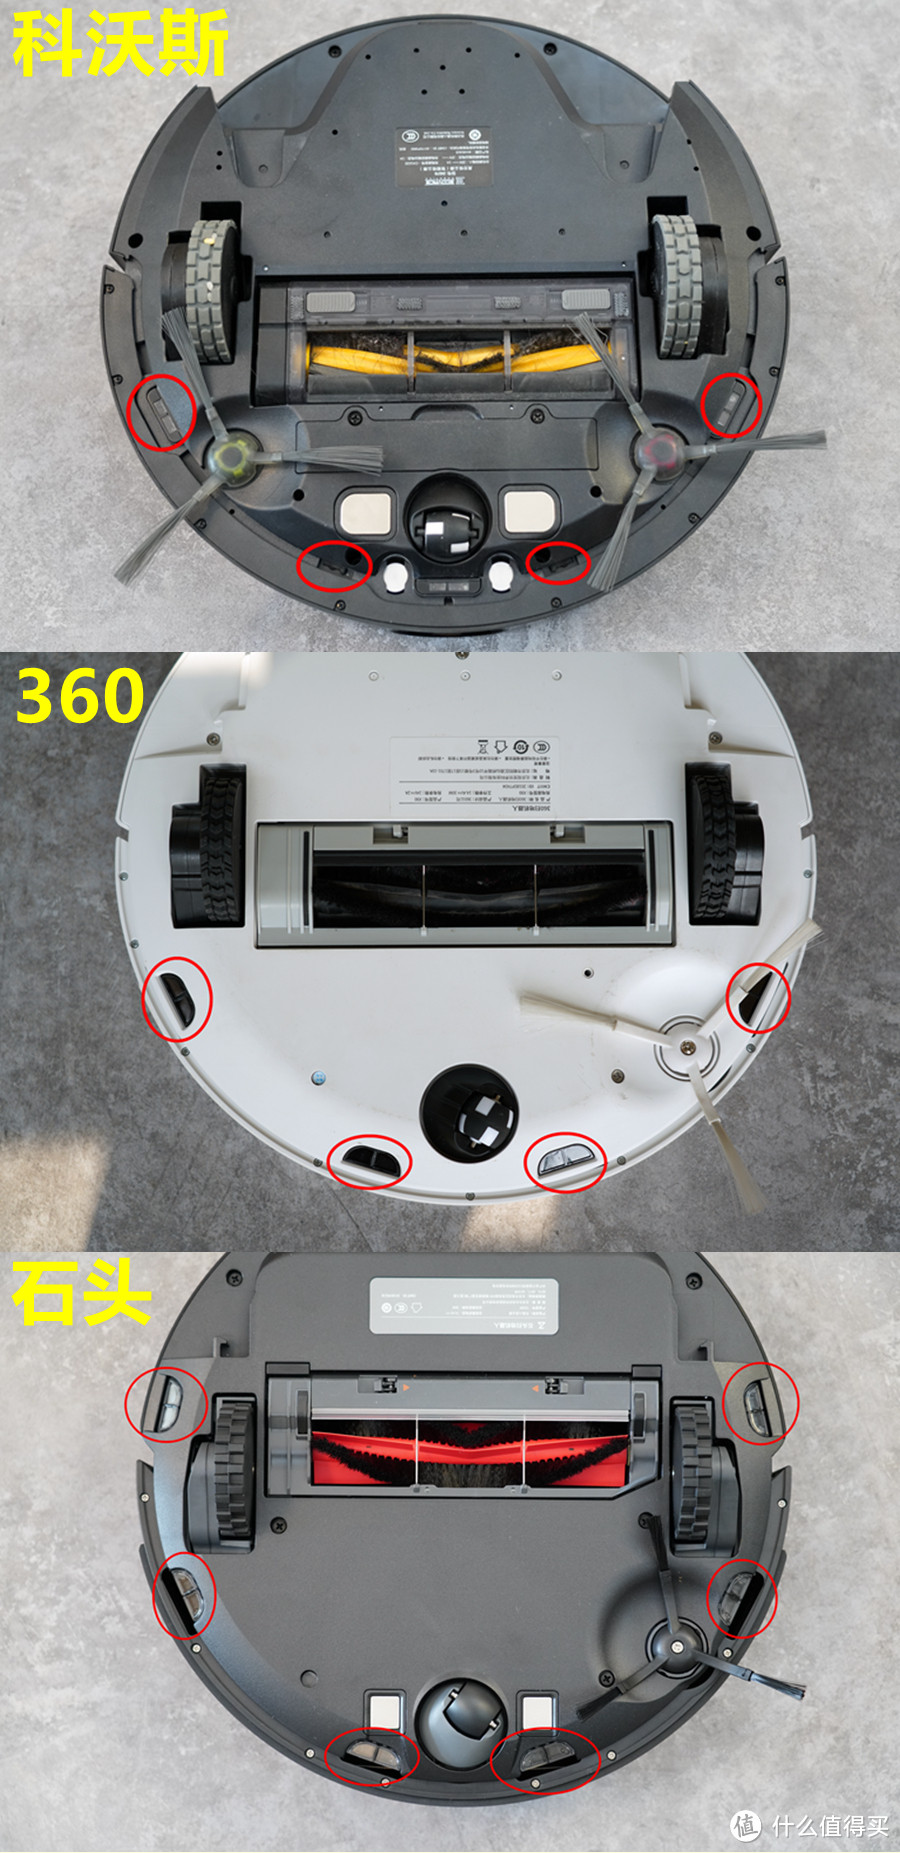 国产自主算法扫拖一体扫地机：科沃斯DG70、石头T6、360 X90、 谁才是2K元价位最香的扫地机？